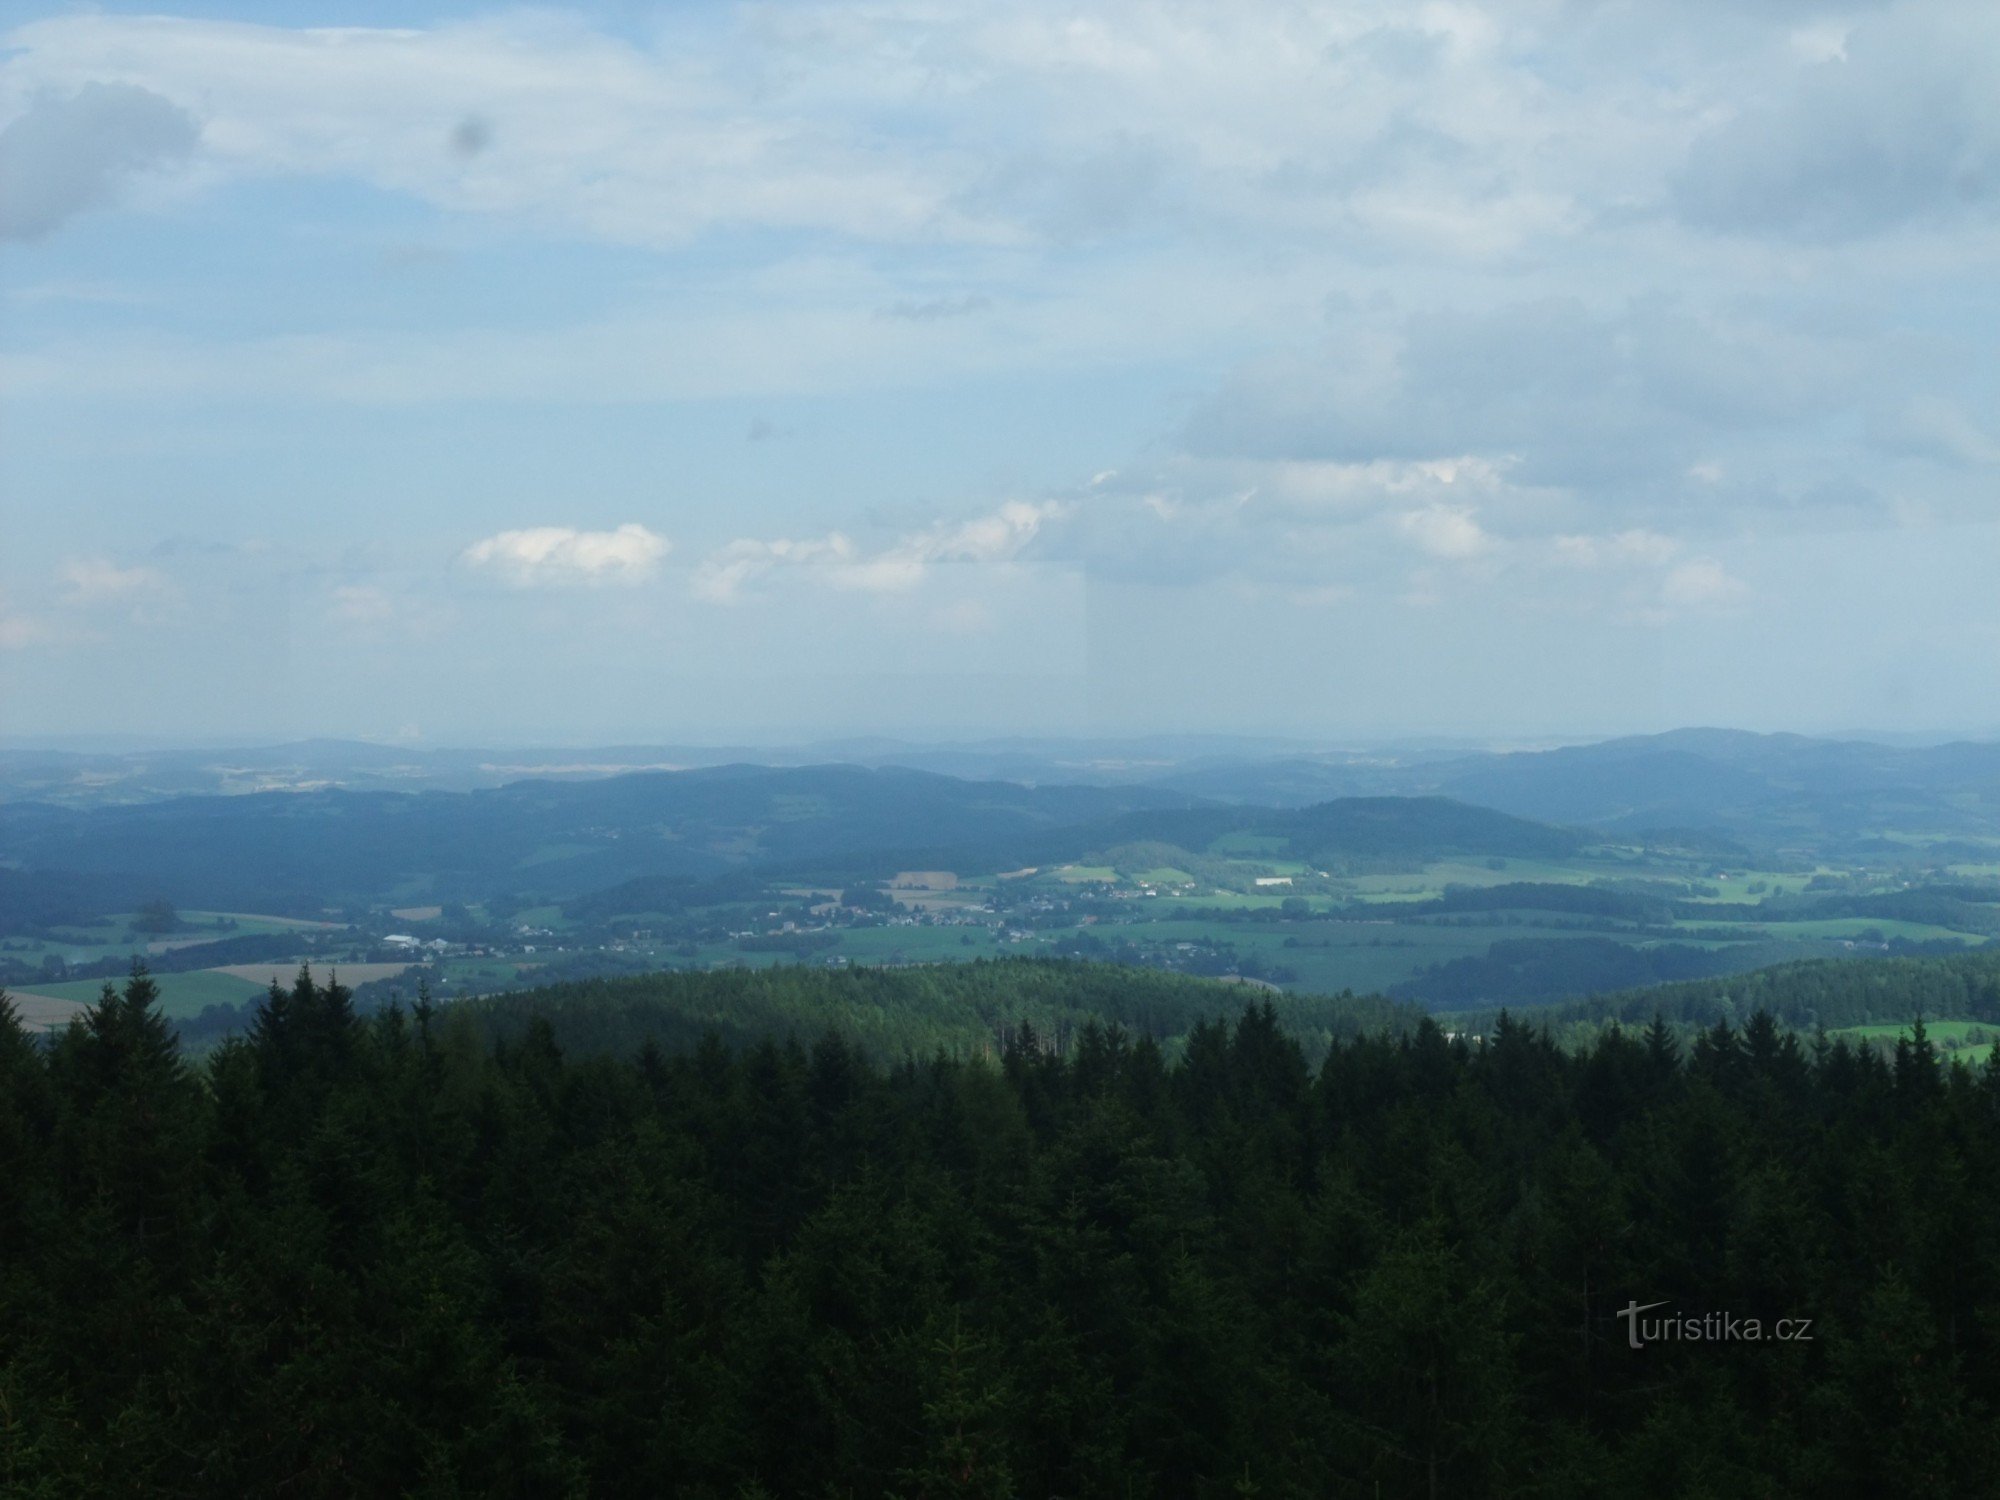 Η θέα από τον πύργο παρατήρησης Klosterman